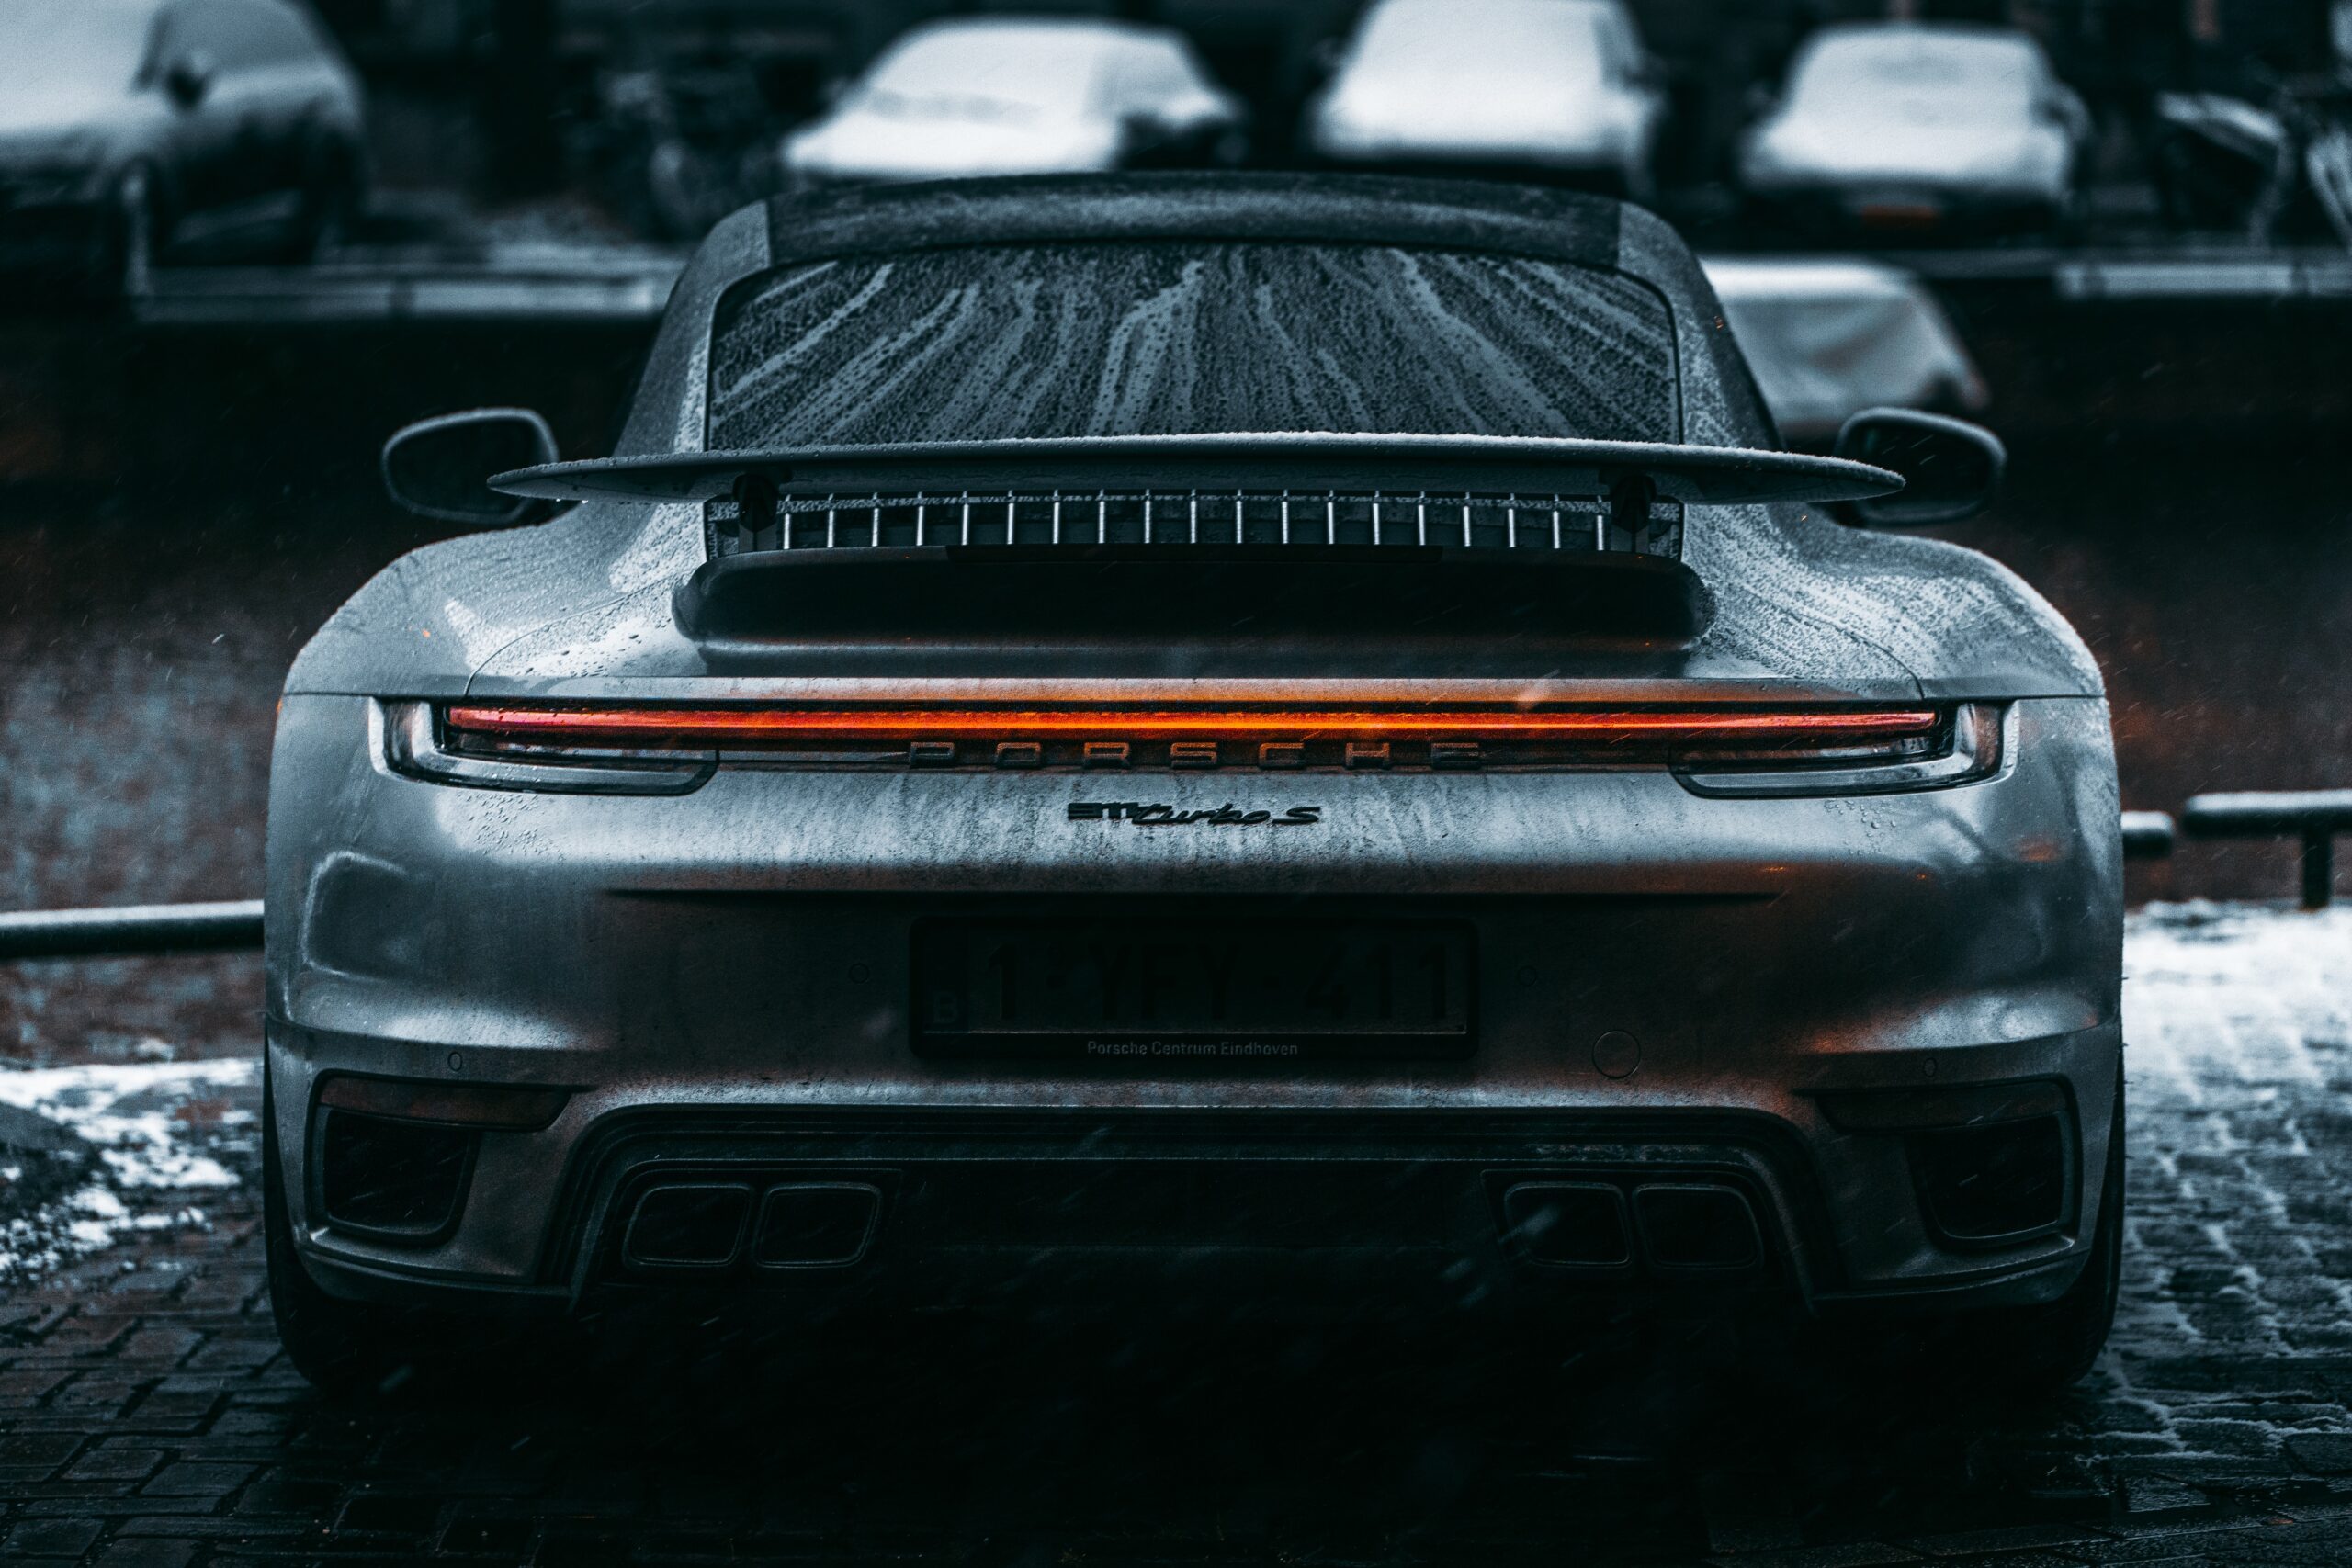 Porsche car